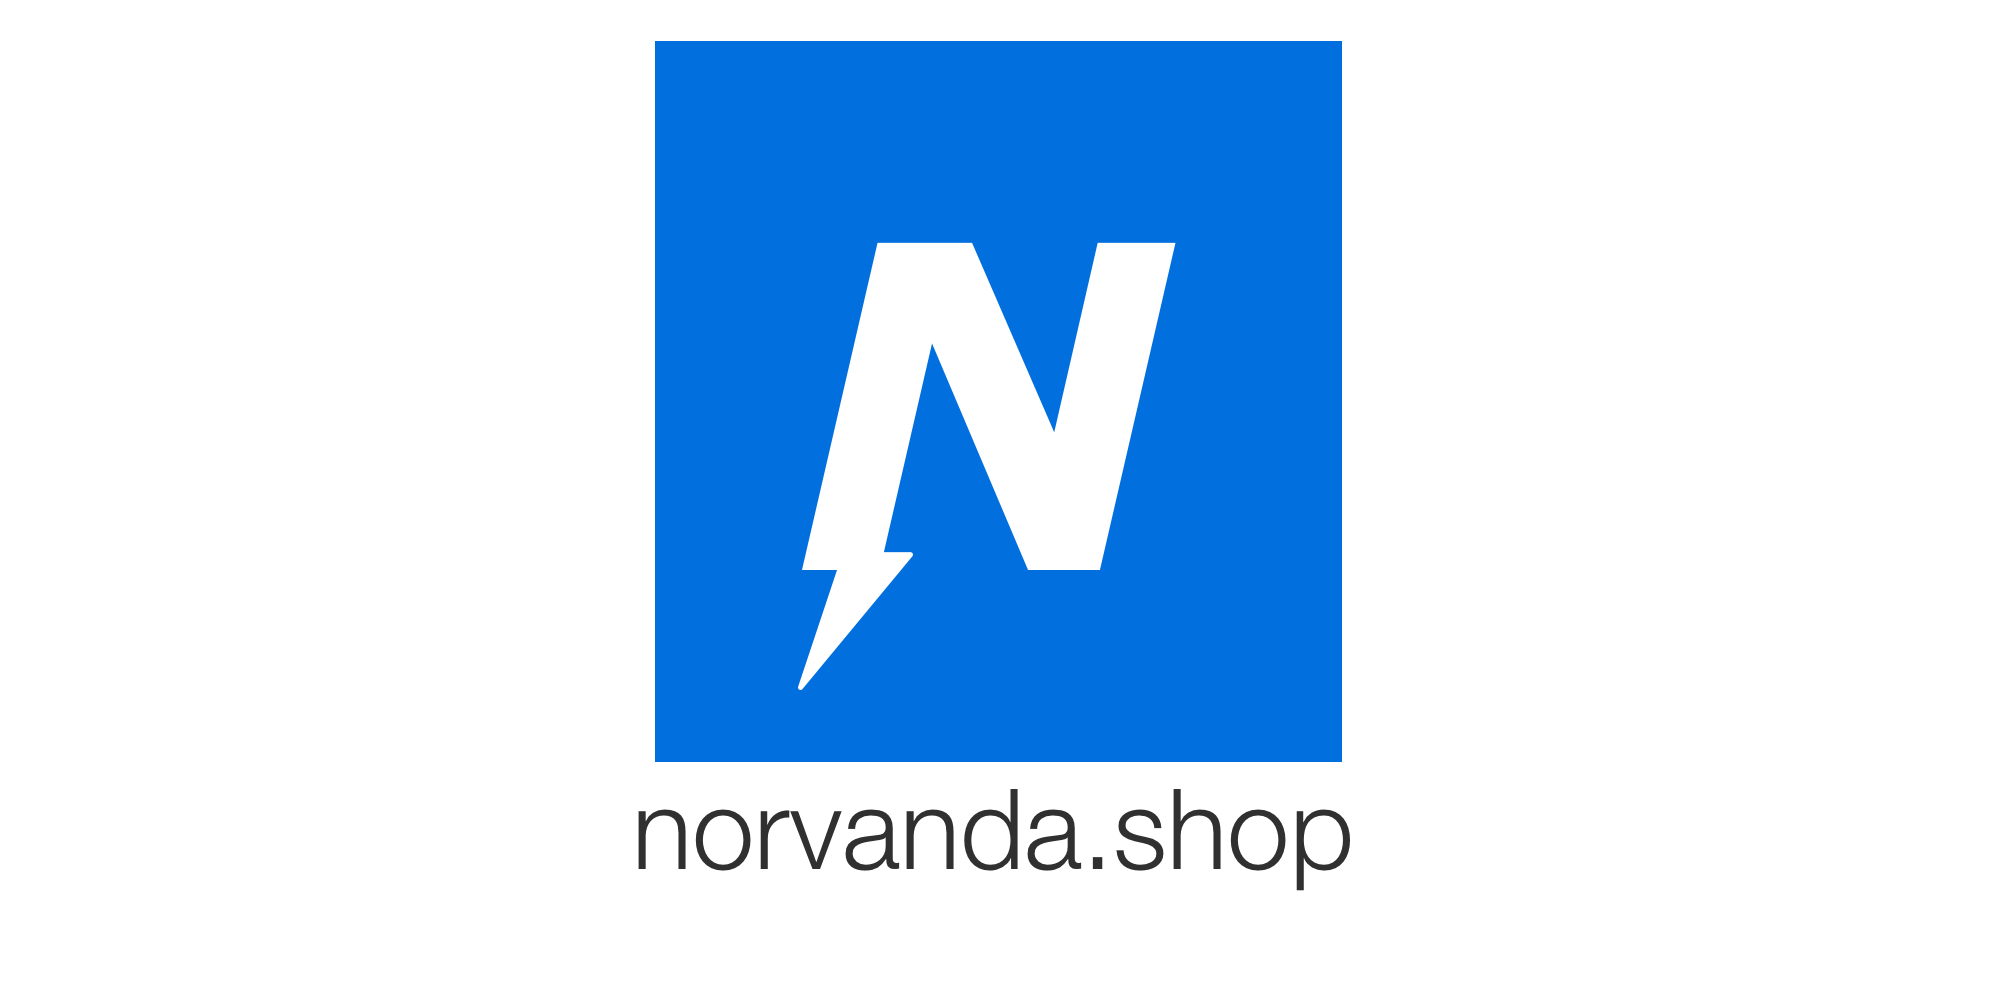 Norvanda Shop